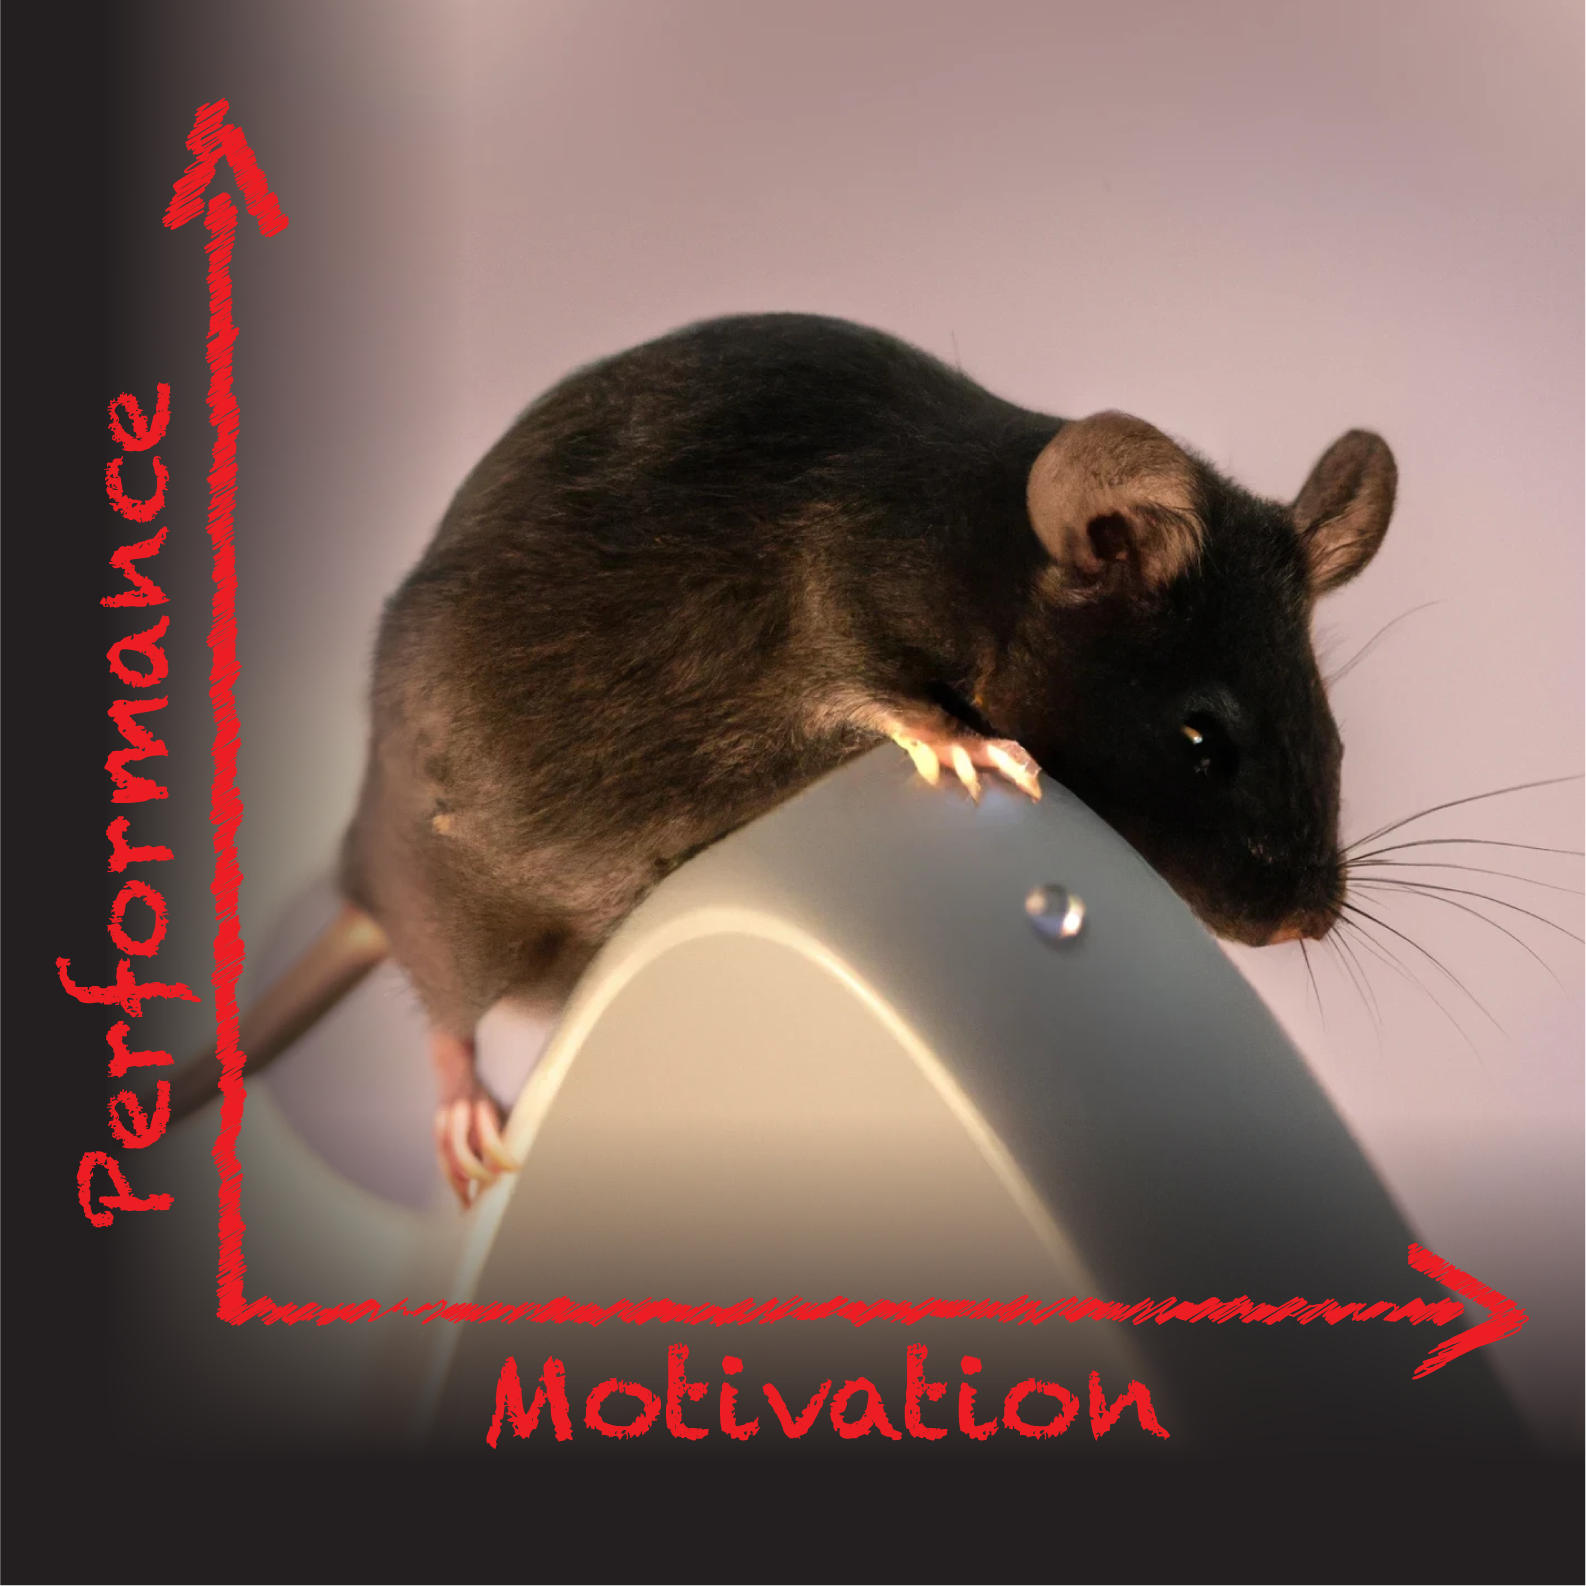 (در این تصویر موشی را می بینید که برای رفع تشنگی به بالای تپه رفته و منحنی قانون یرکس-دادسون را منعکس می کند که رابطه بین عملکرد رفتاری و انگیزه را توصیف می کند. موش این کار را با کمک سبیل هایش انجام می دهد که برای کاوش در دنیای جوندگان ضروری است.)